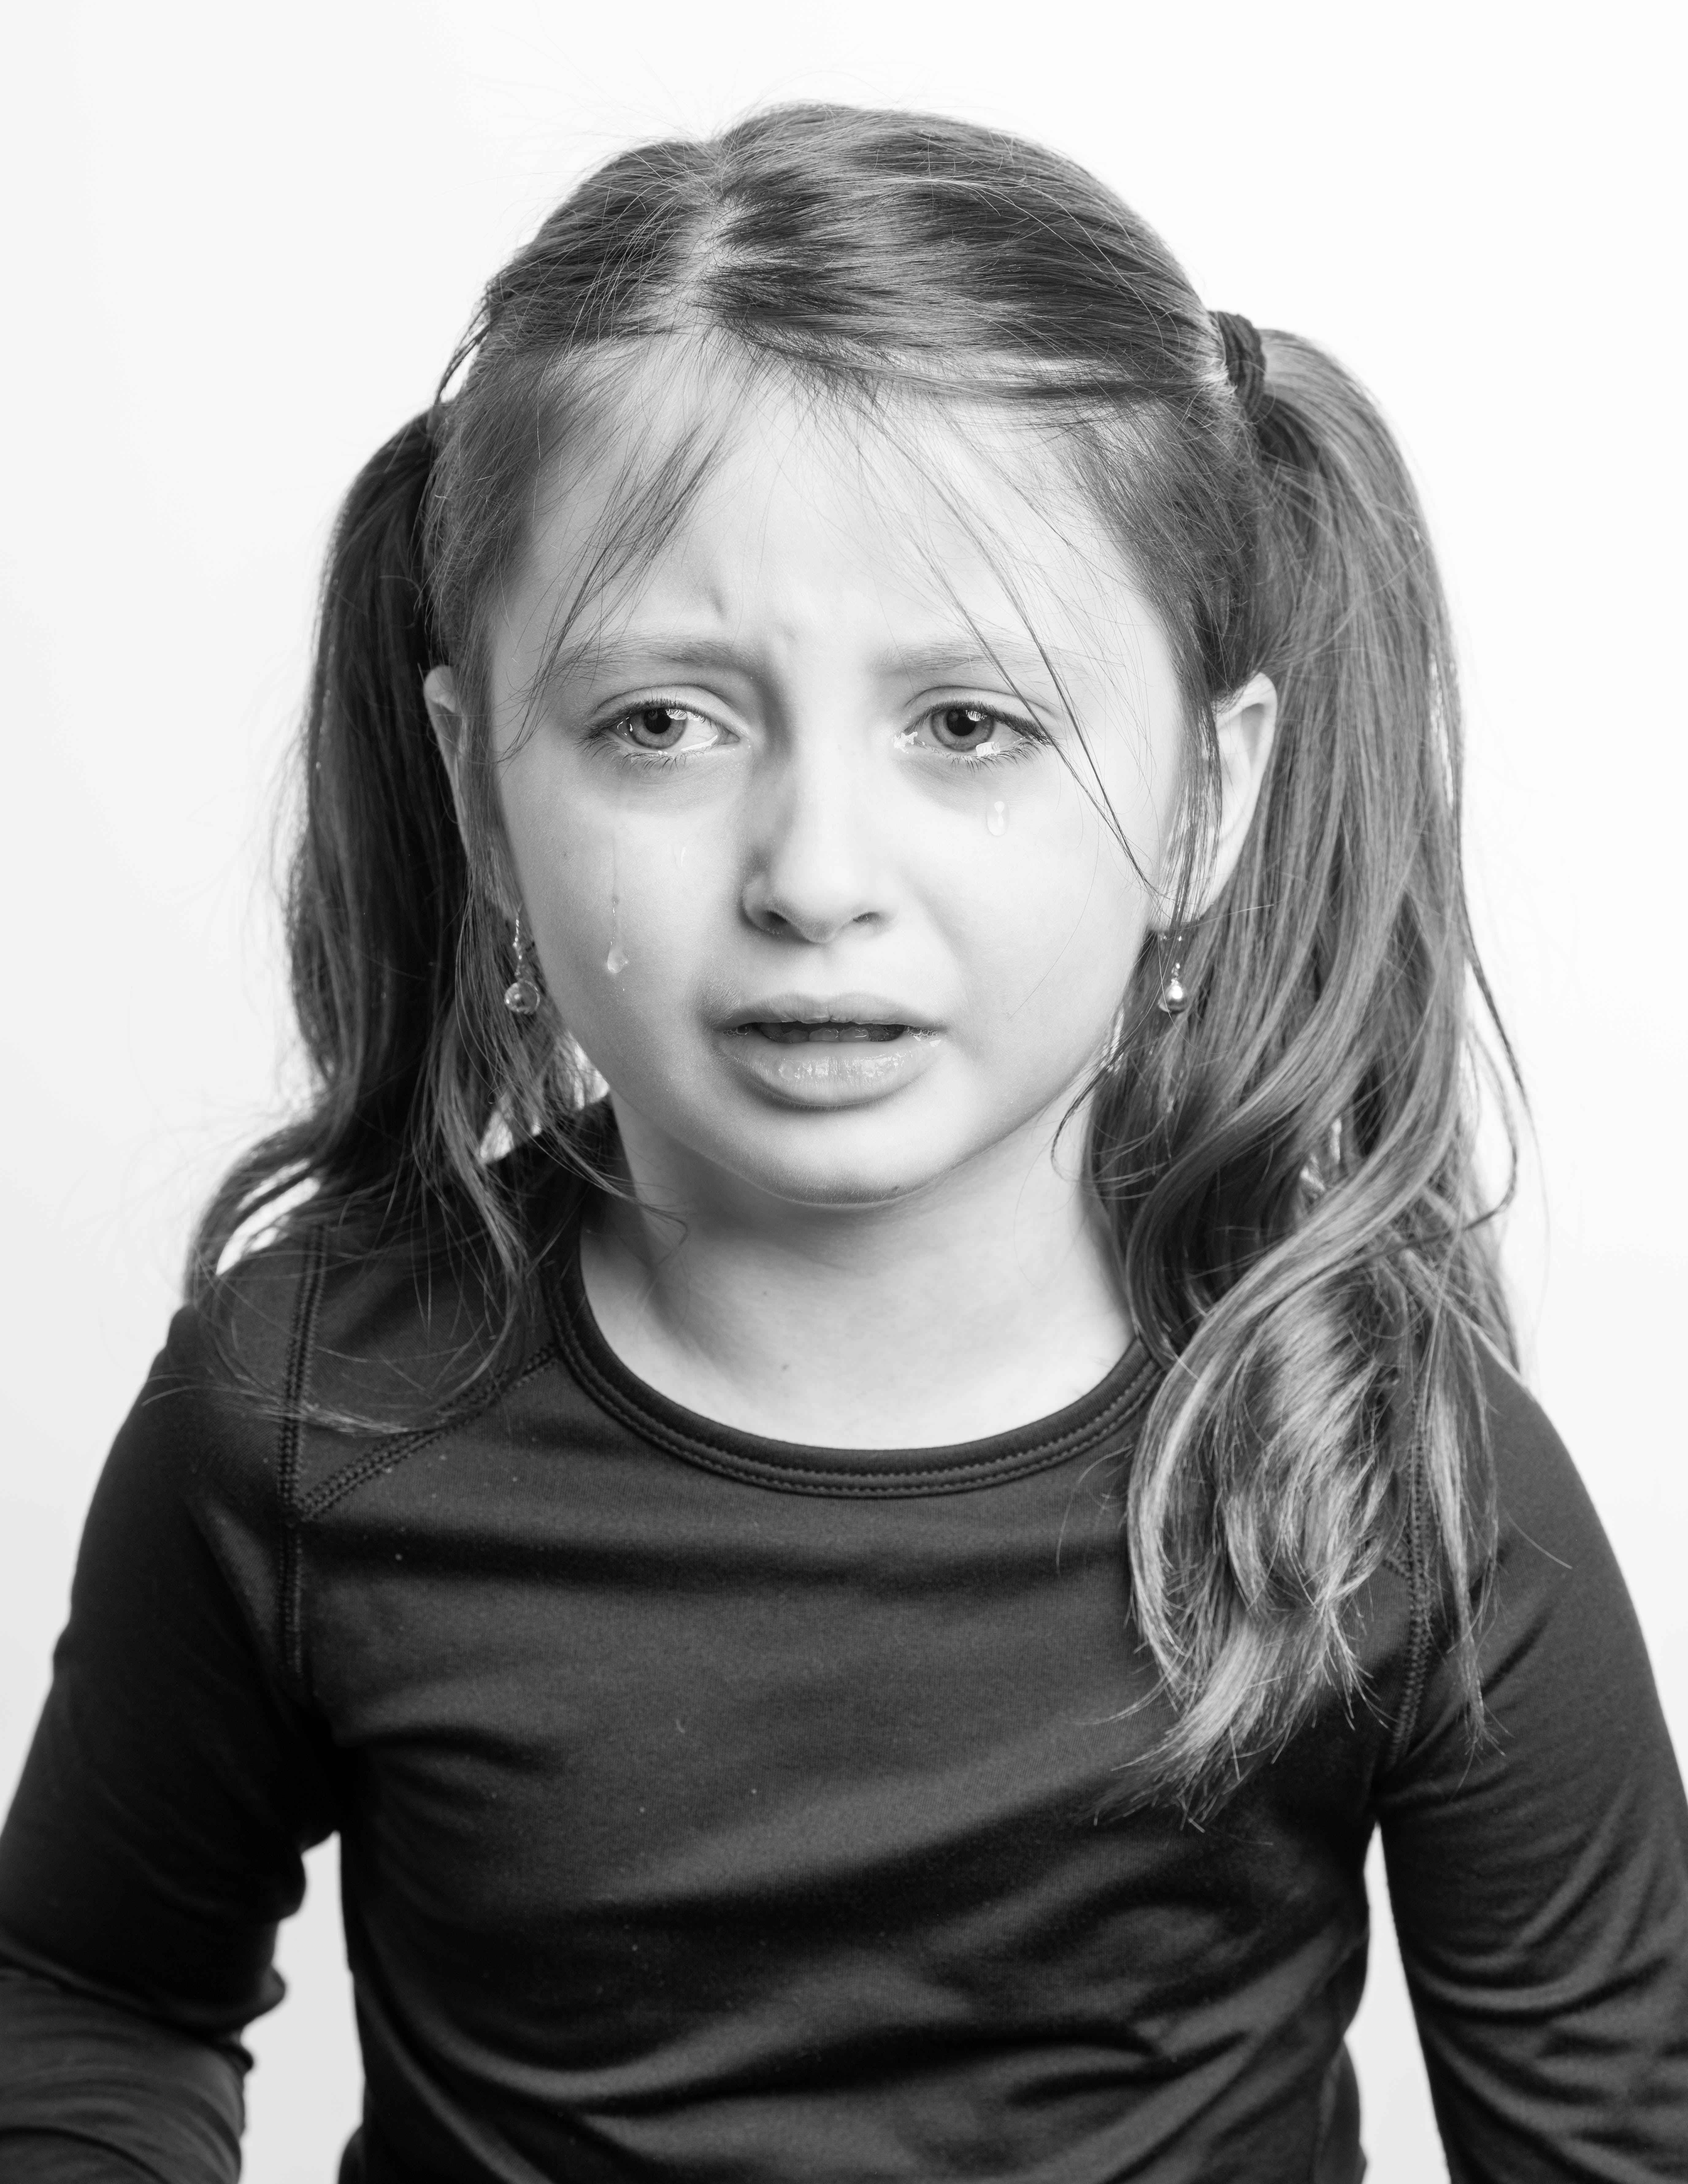 Une image en noir et blanc d'une petite fille qui pleure | Source : Pexels